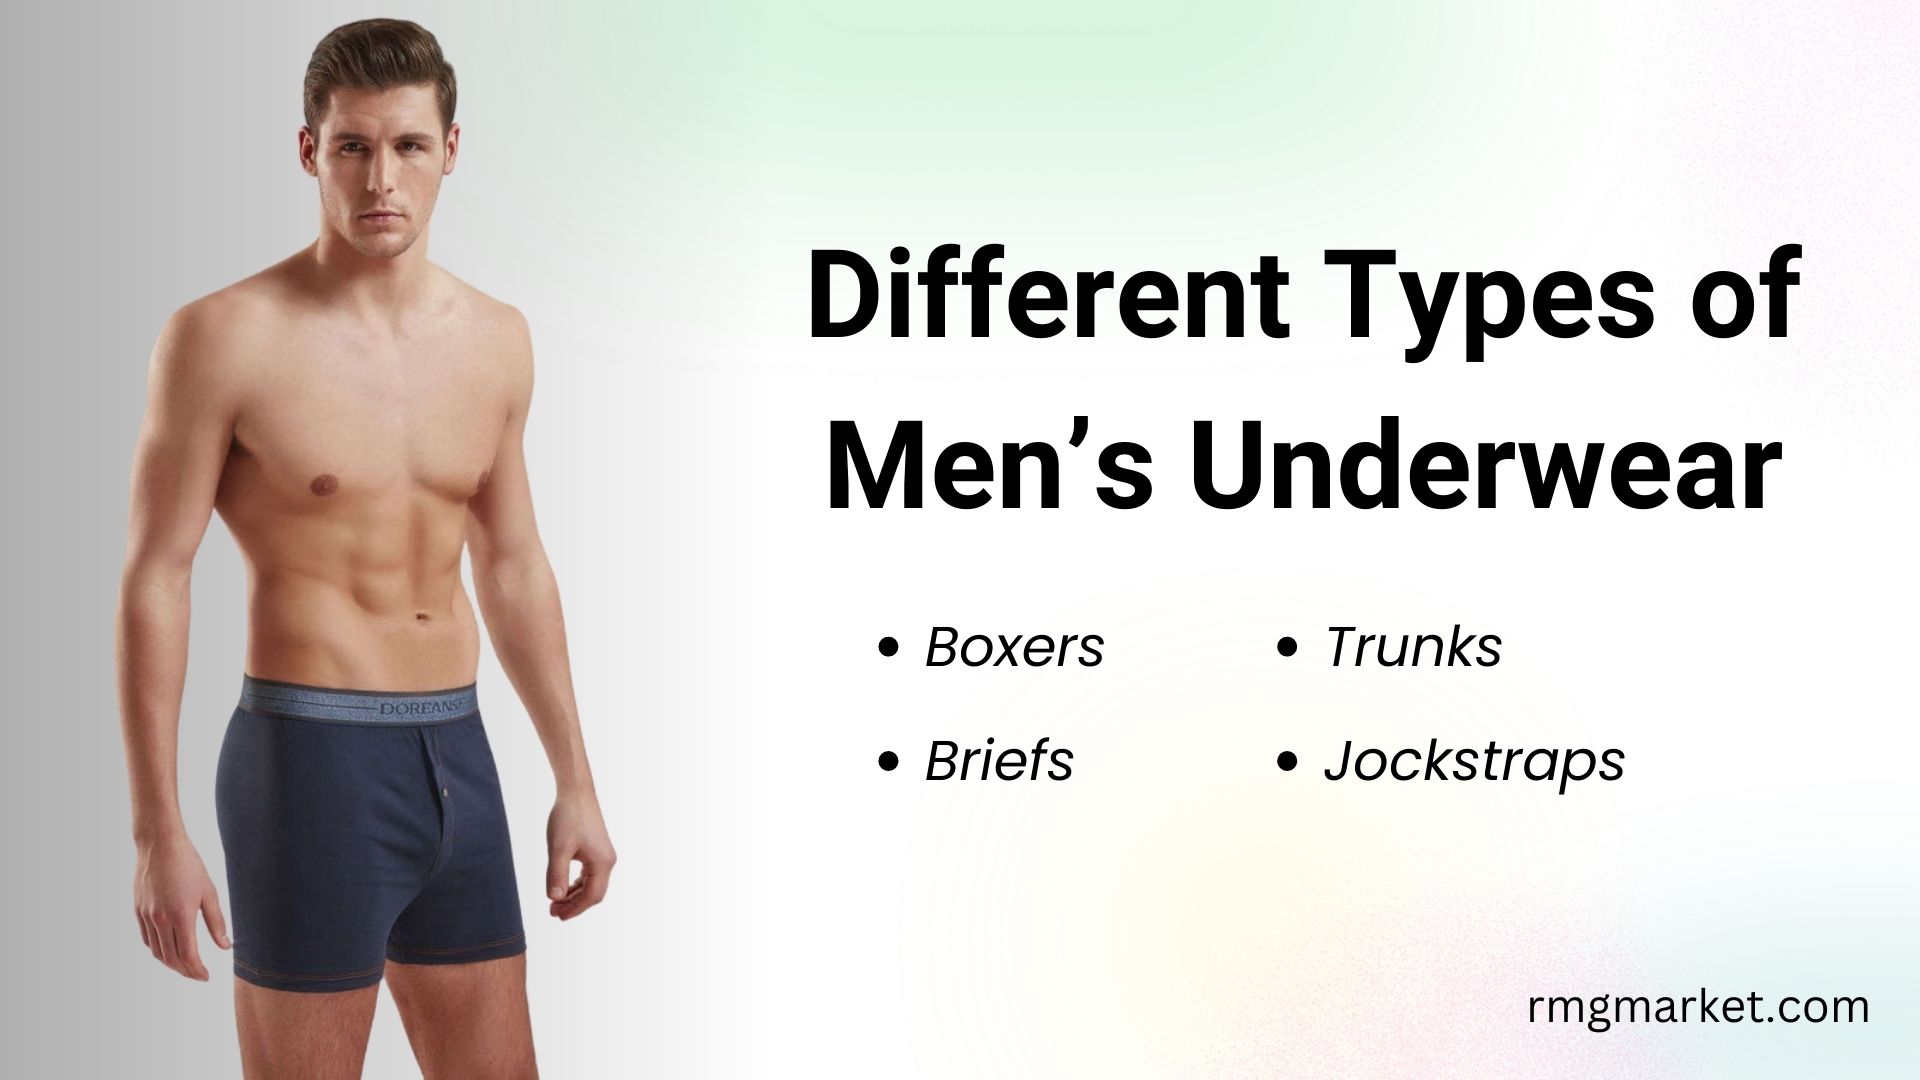 Different Types of Men’s Underwear